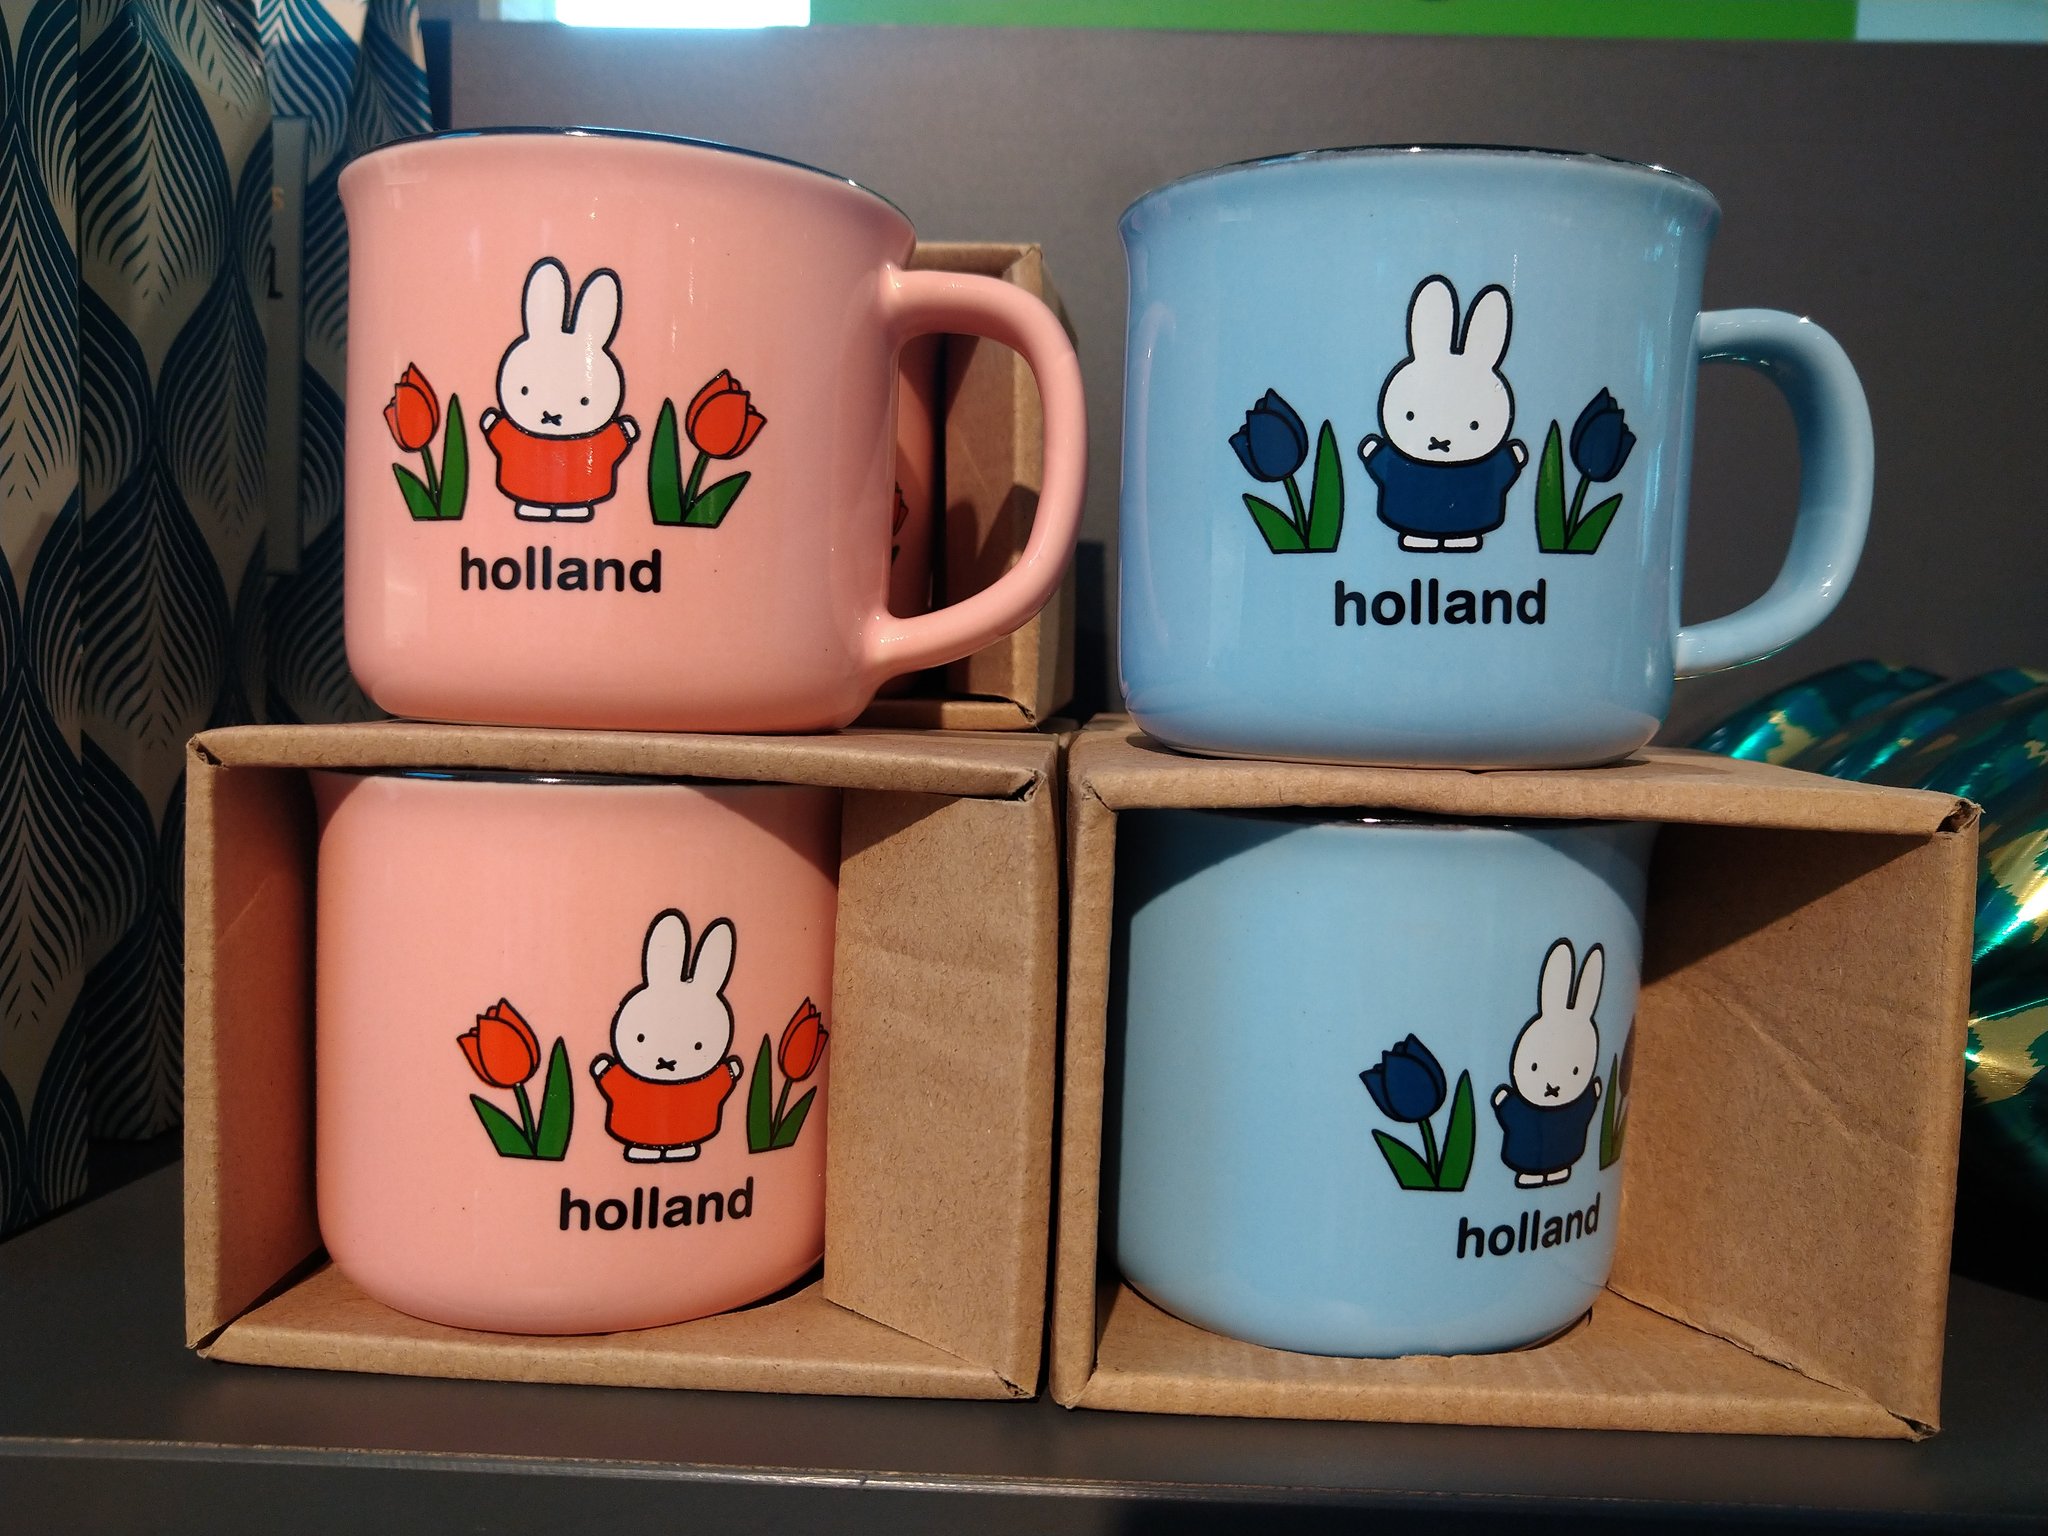 ミイル Miiru Vvv 観光案内所 で見つけたミッフィーちゃんのマグカップ ホーローかと思って持ったら実は陶器で重くてびっくりした 最近 オランダの英語表記がthe Netherlands に統一されたから Holland 表記は今後貴重になるかも T Co